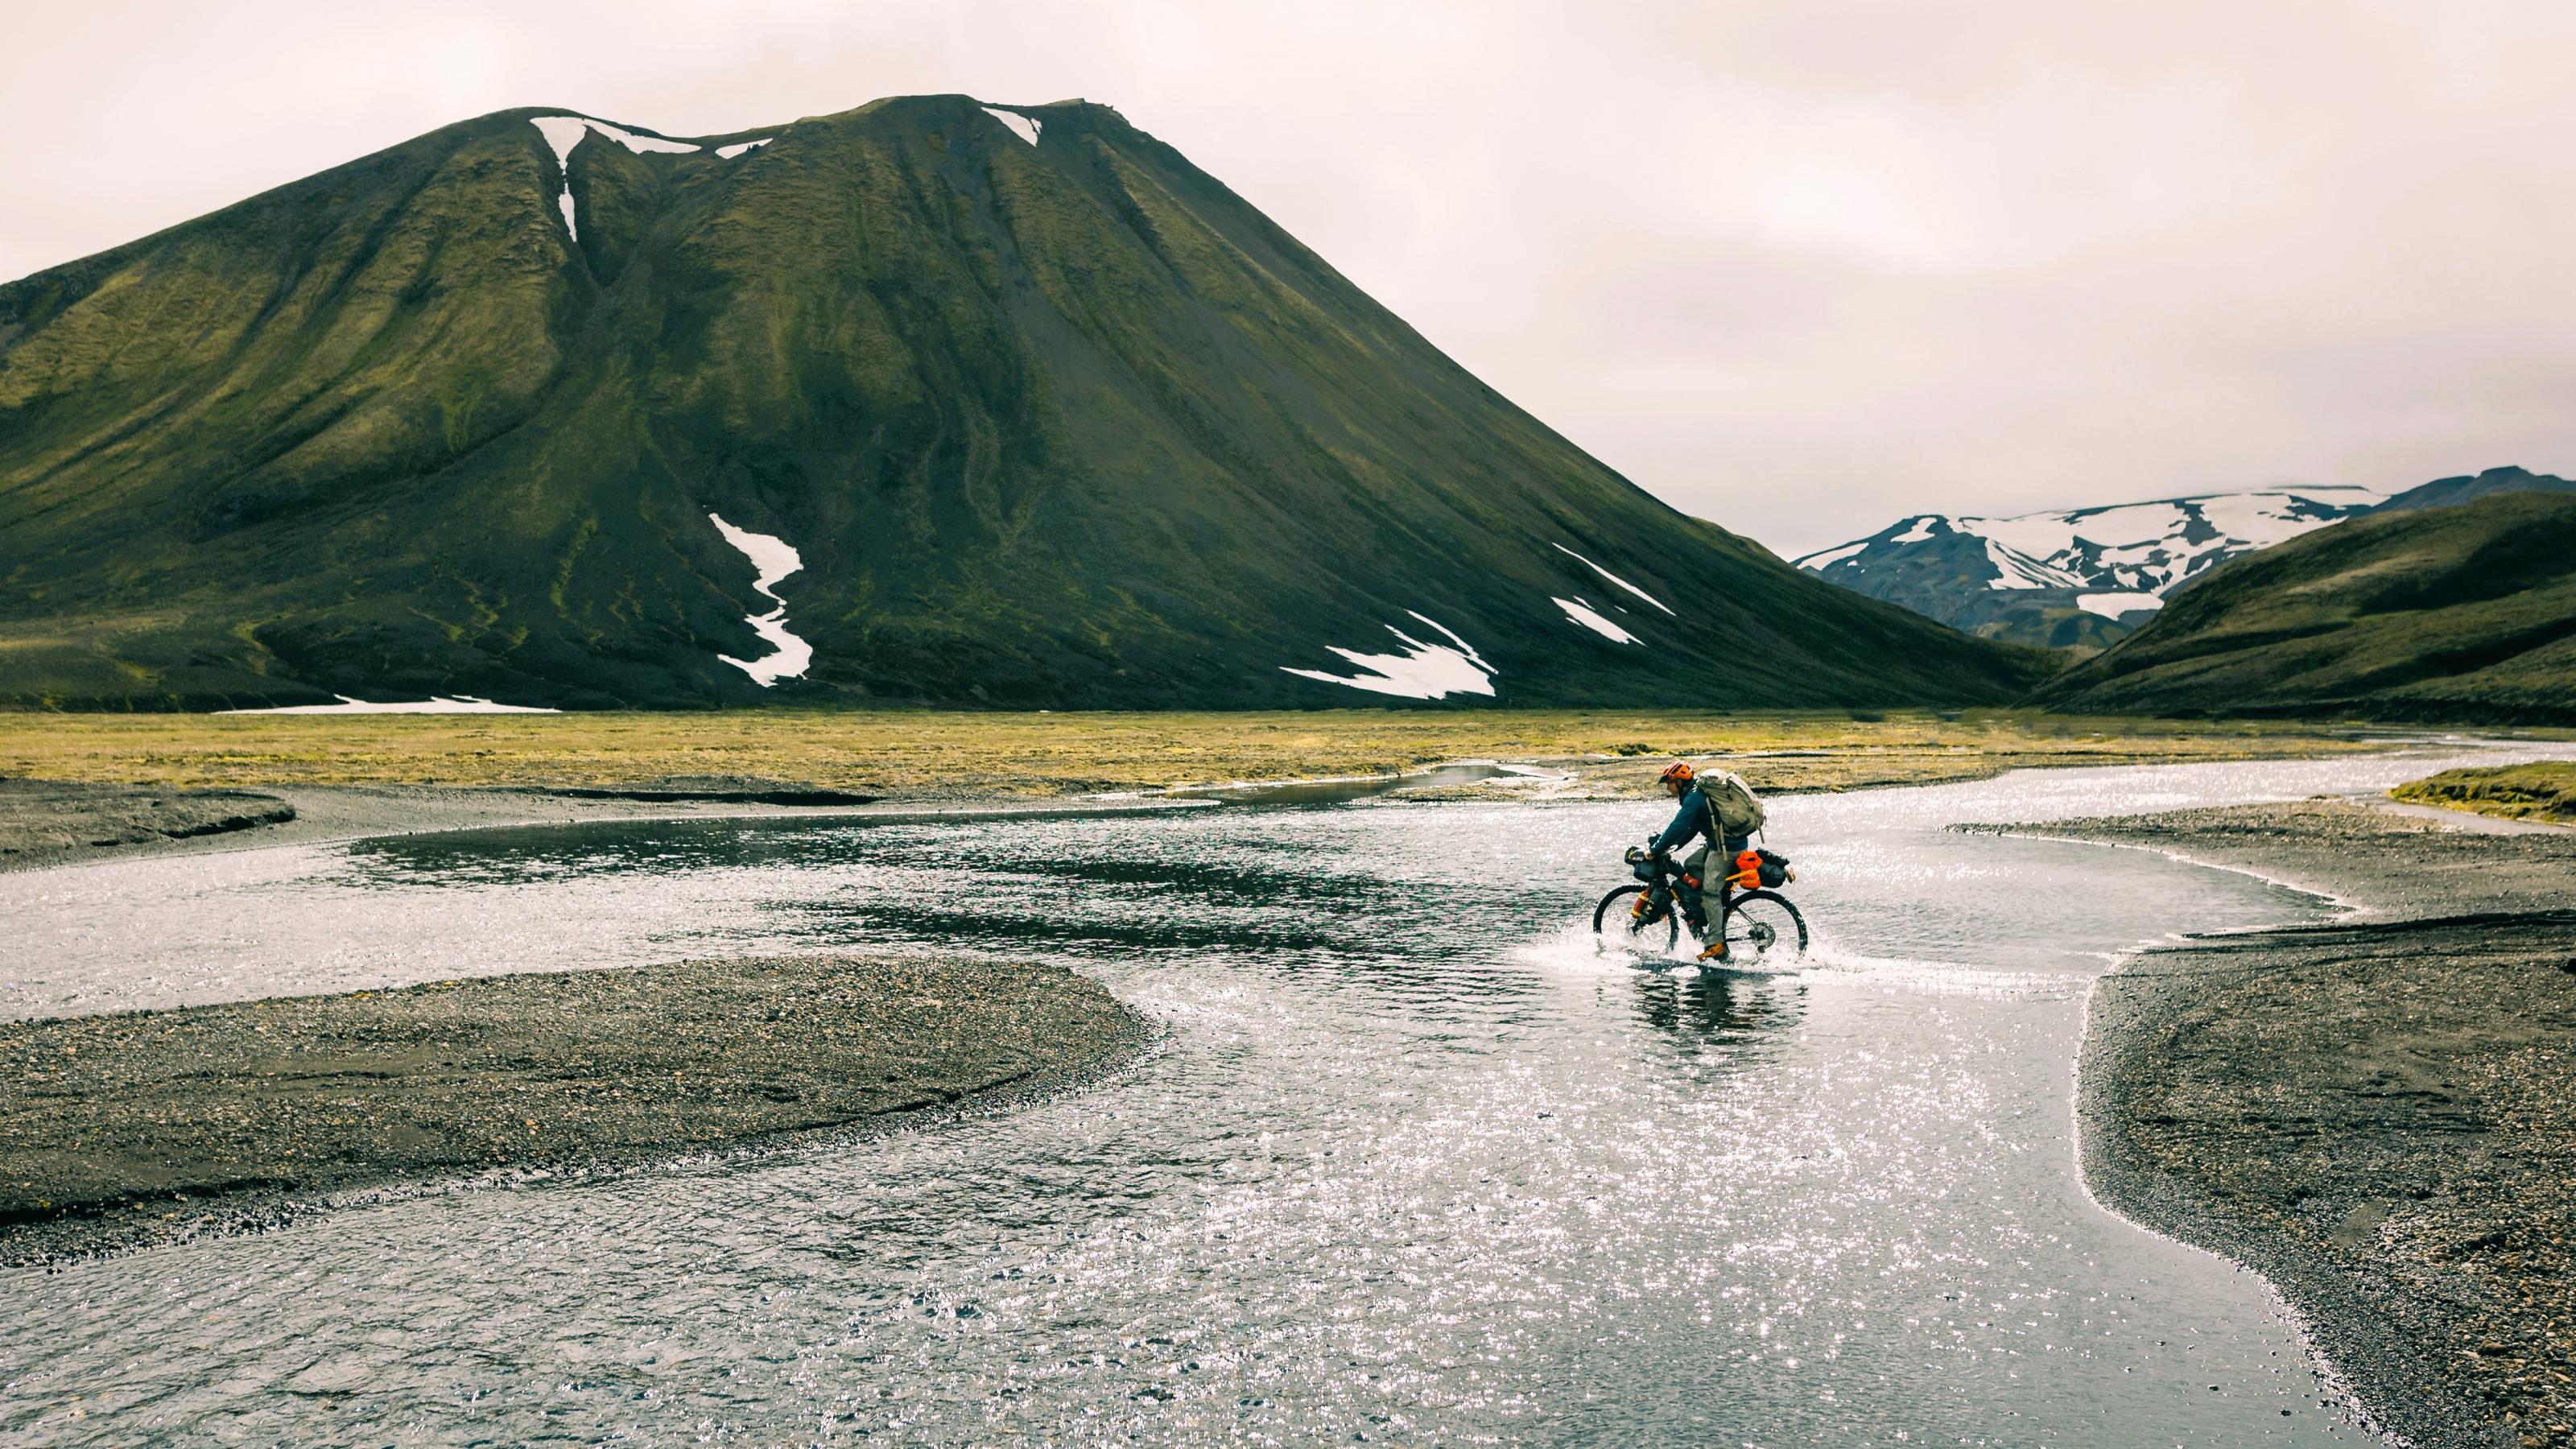 Ein in wilder isländischer Landschaft einsamer Radfahrer quert einen breiten Wasserstrom, der ihm beim „Pedalieren“ nasse Füße bereitet.